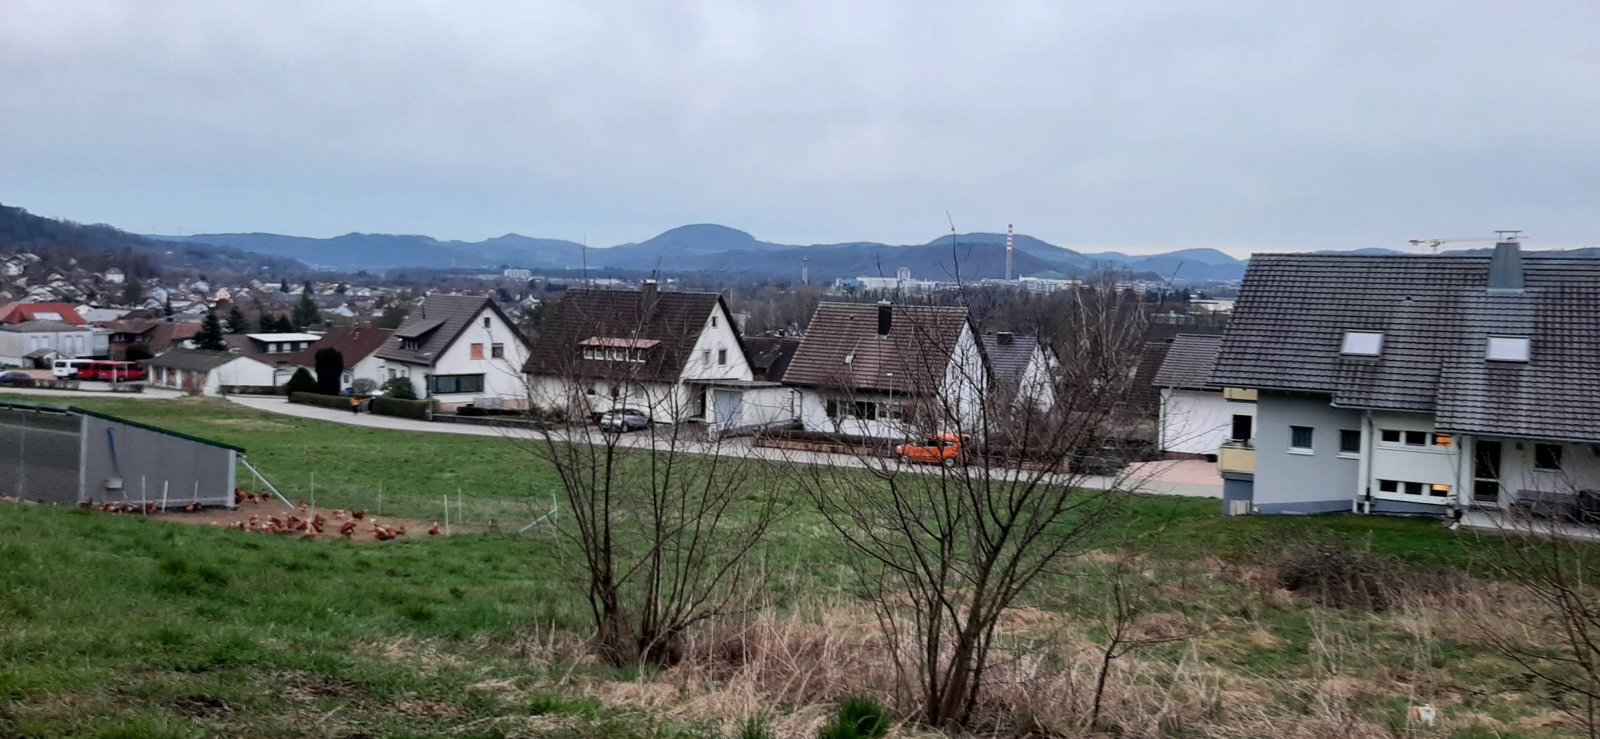 Bestpreisgarantie bei Bien-Zenker - Baugrundstück in Bad-Säckingen zu verkaufen